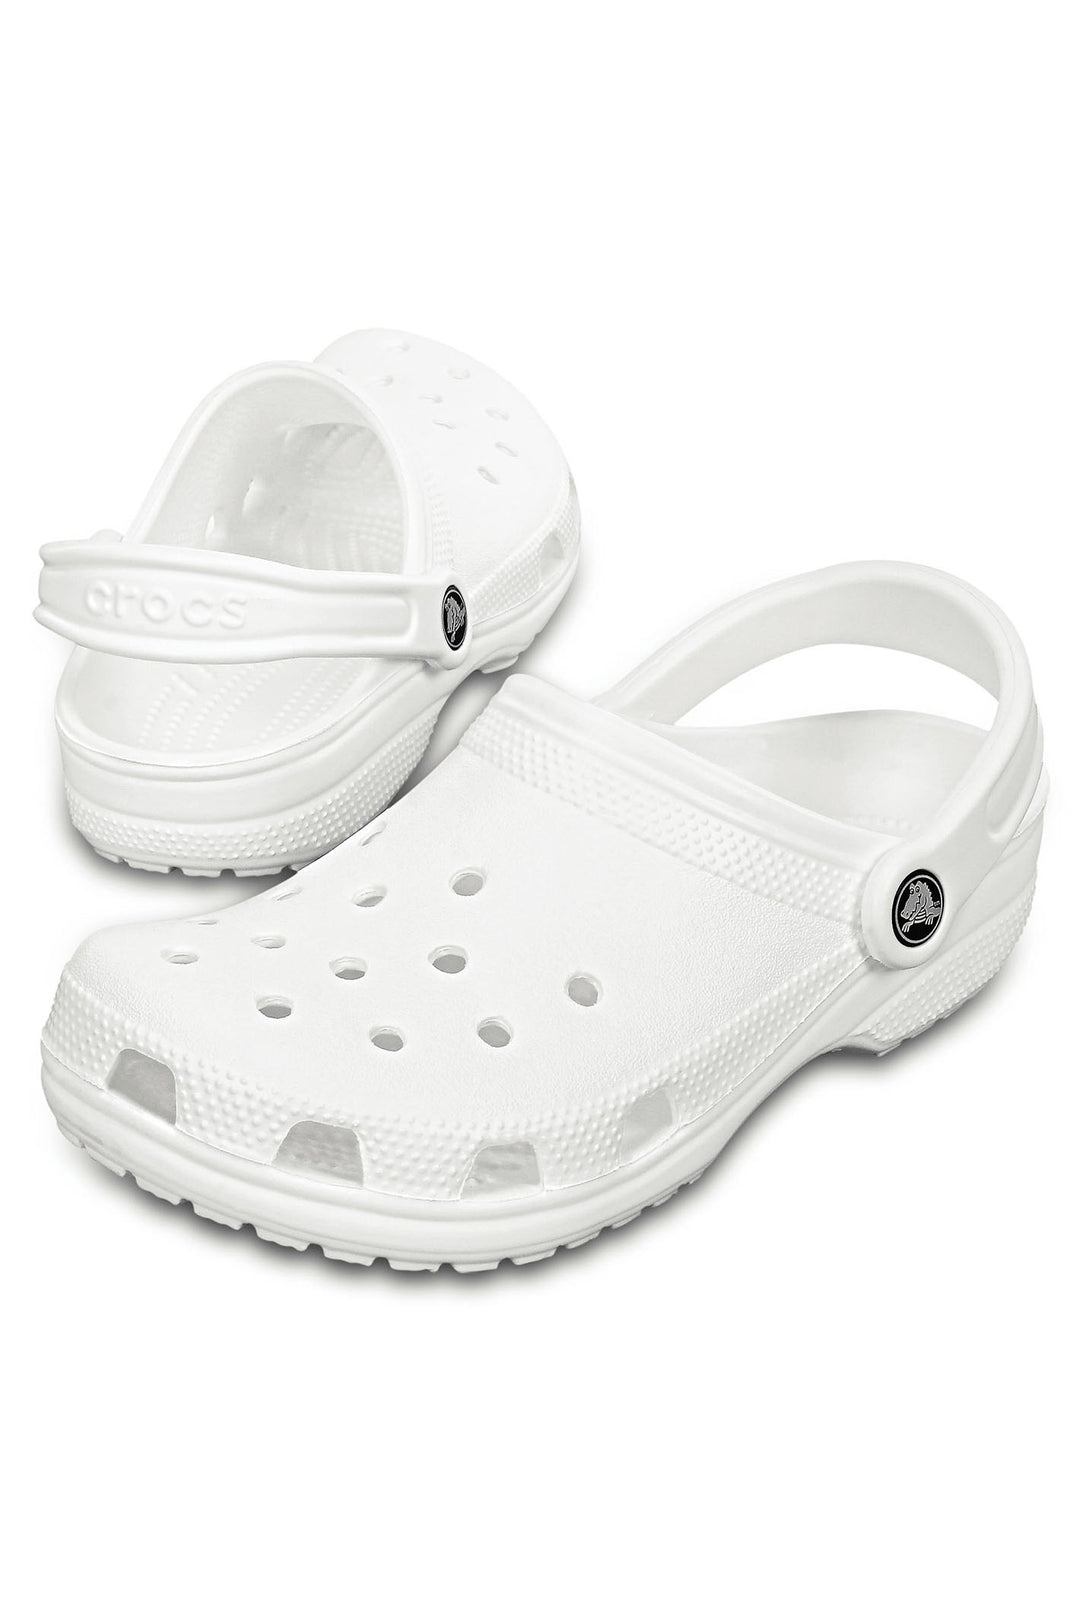 Crocs Classic 10001 100 White Clog - Shirley Allum Boutique